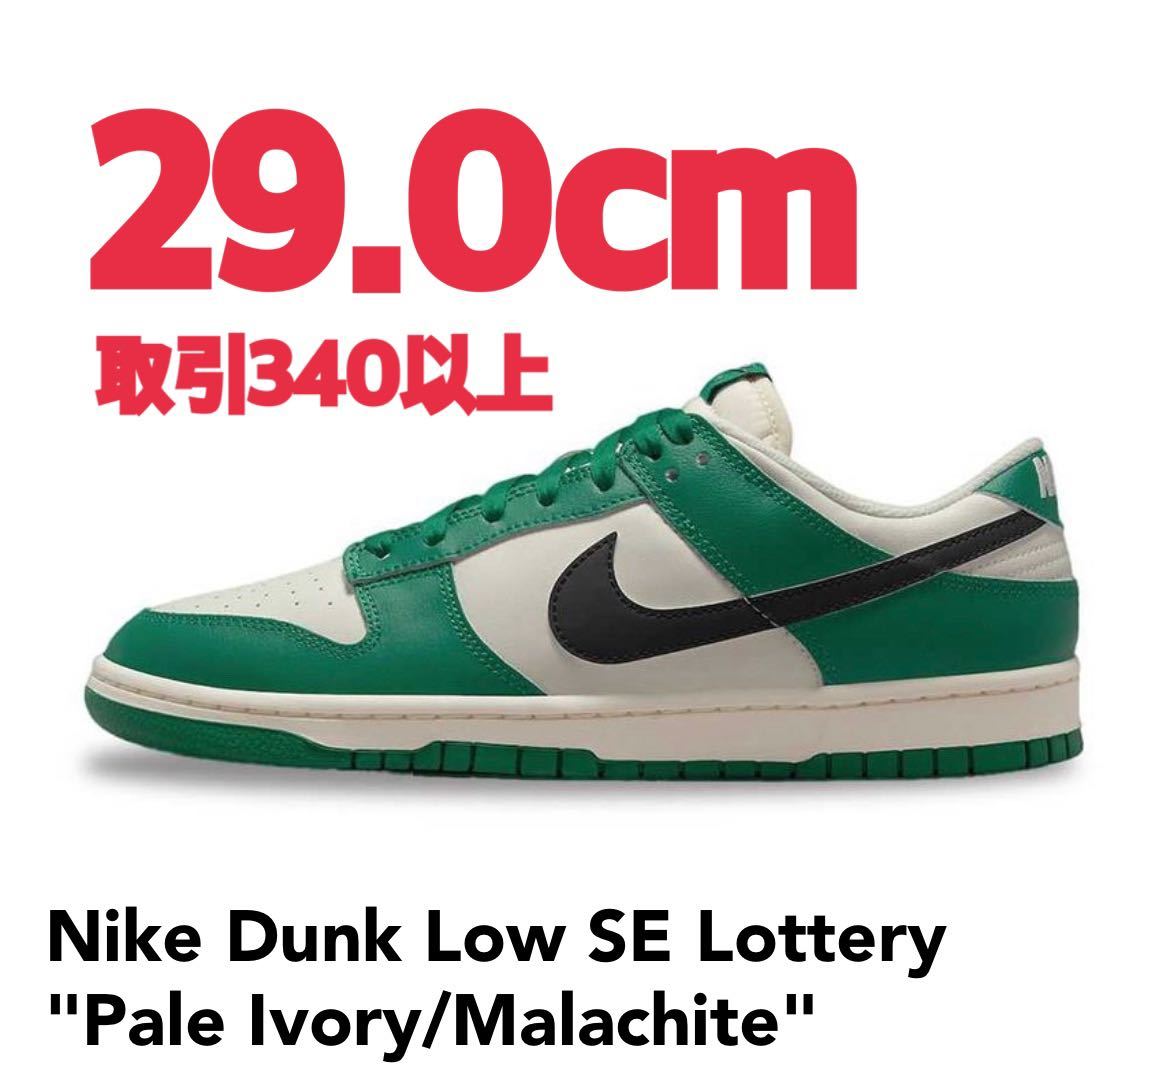 インターネット通販  ロッタリー ロー ダンク ナイキ Lottery Low Dunk Nike スニーカー